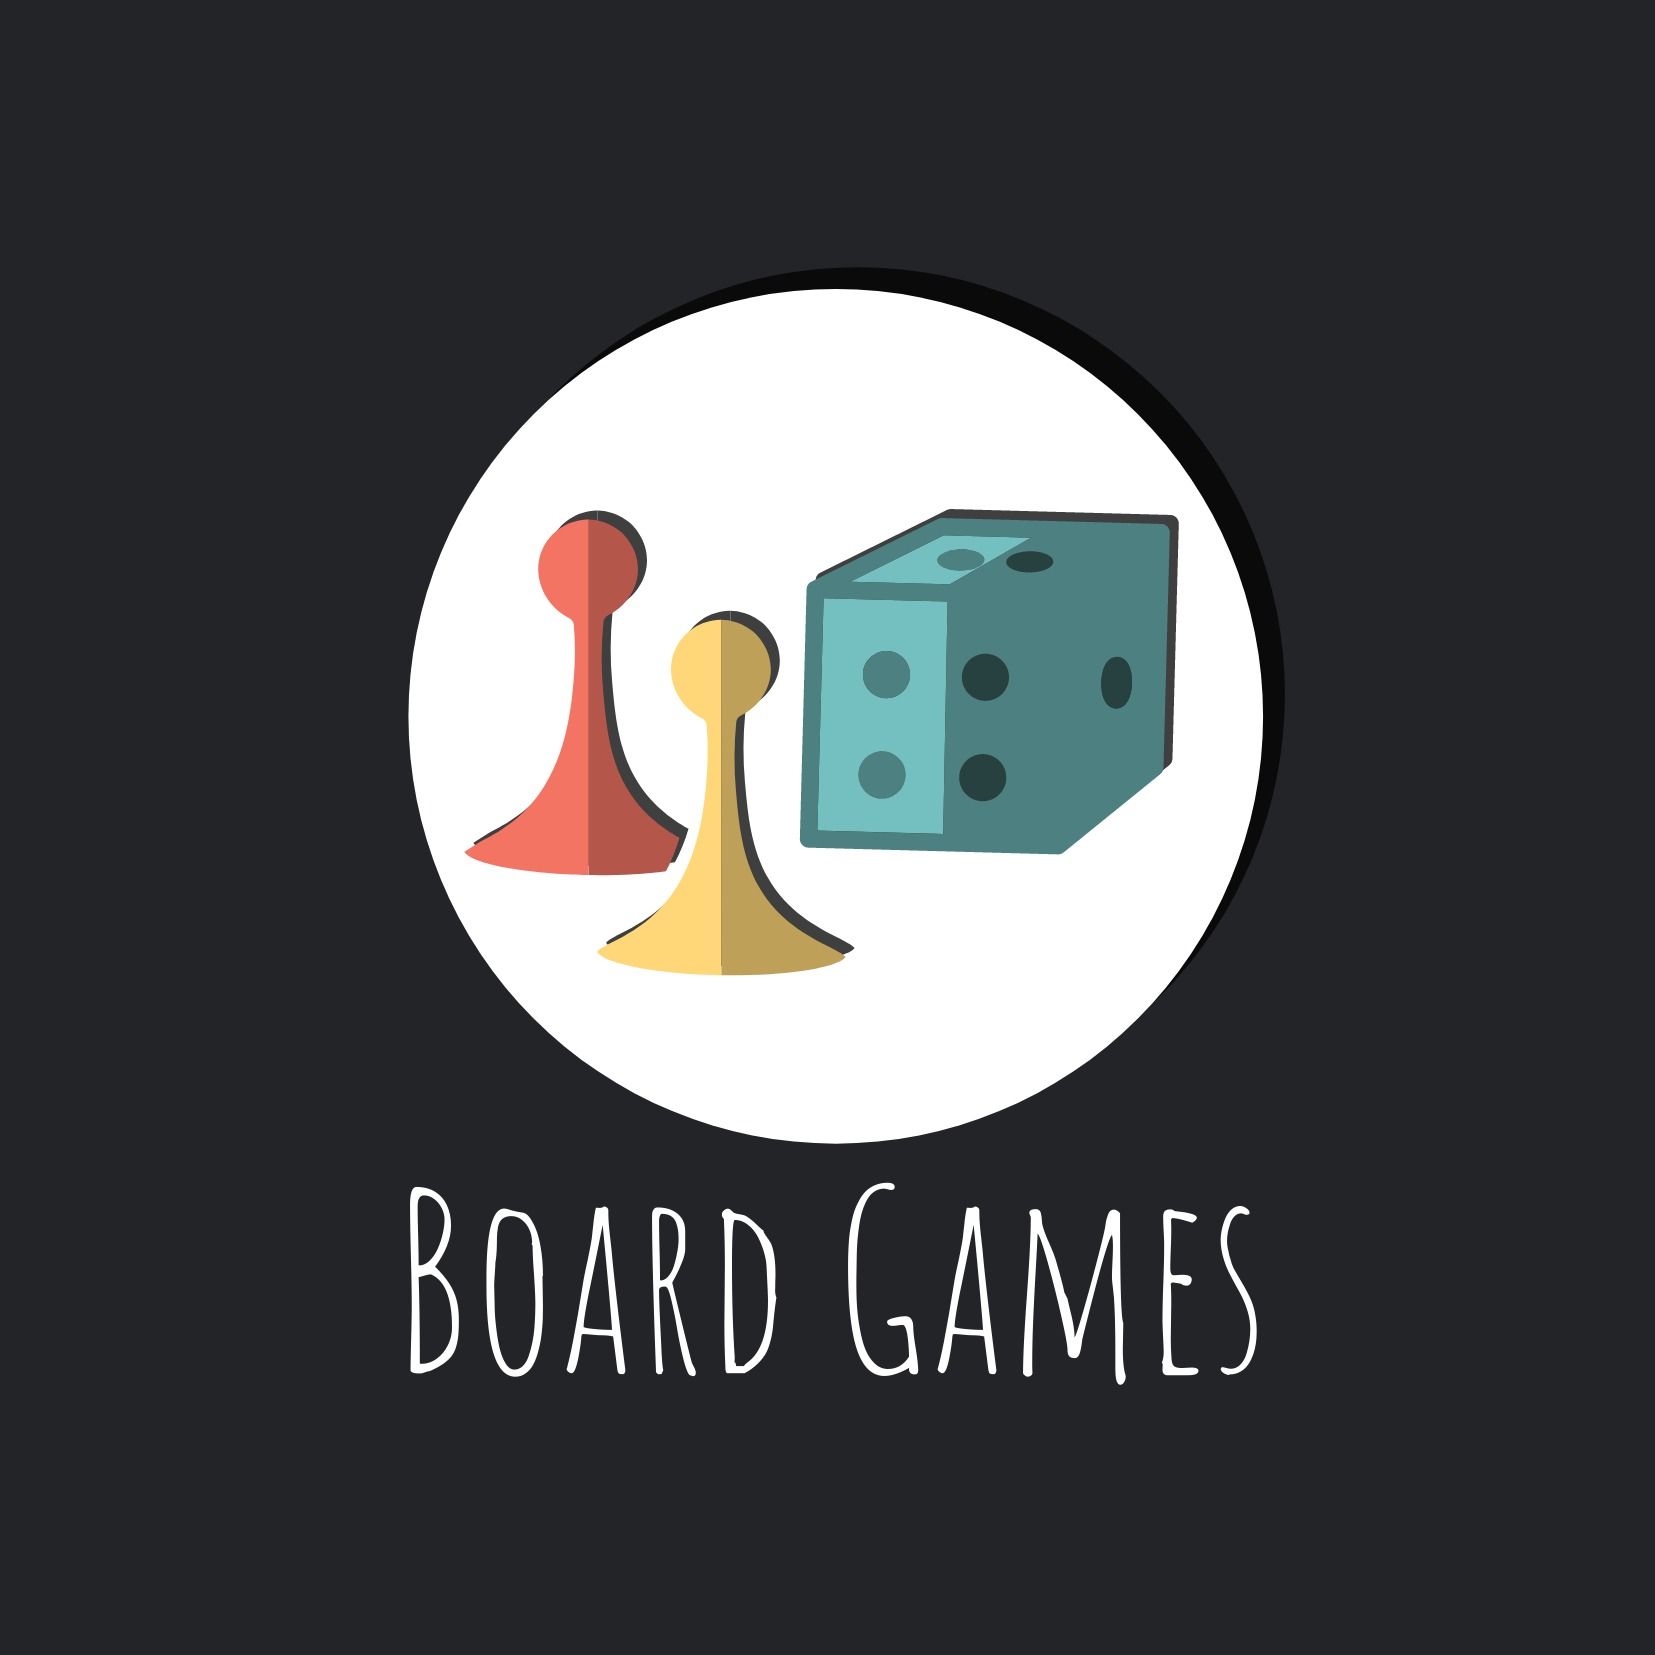 Logotipo de juegos de mesa con dos peones y un dado: una de las mejores opciones de fuente para logotipos de juegos - Imagen